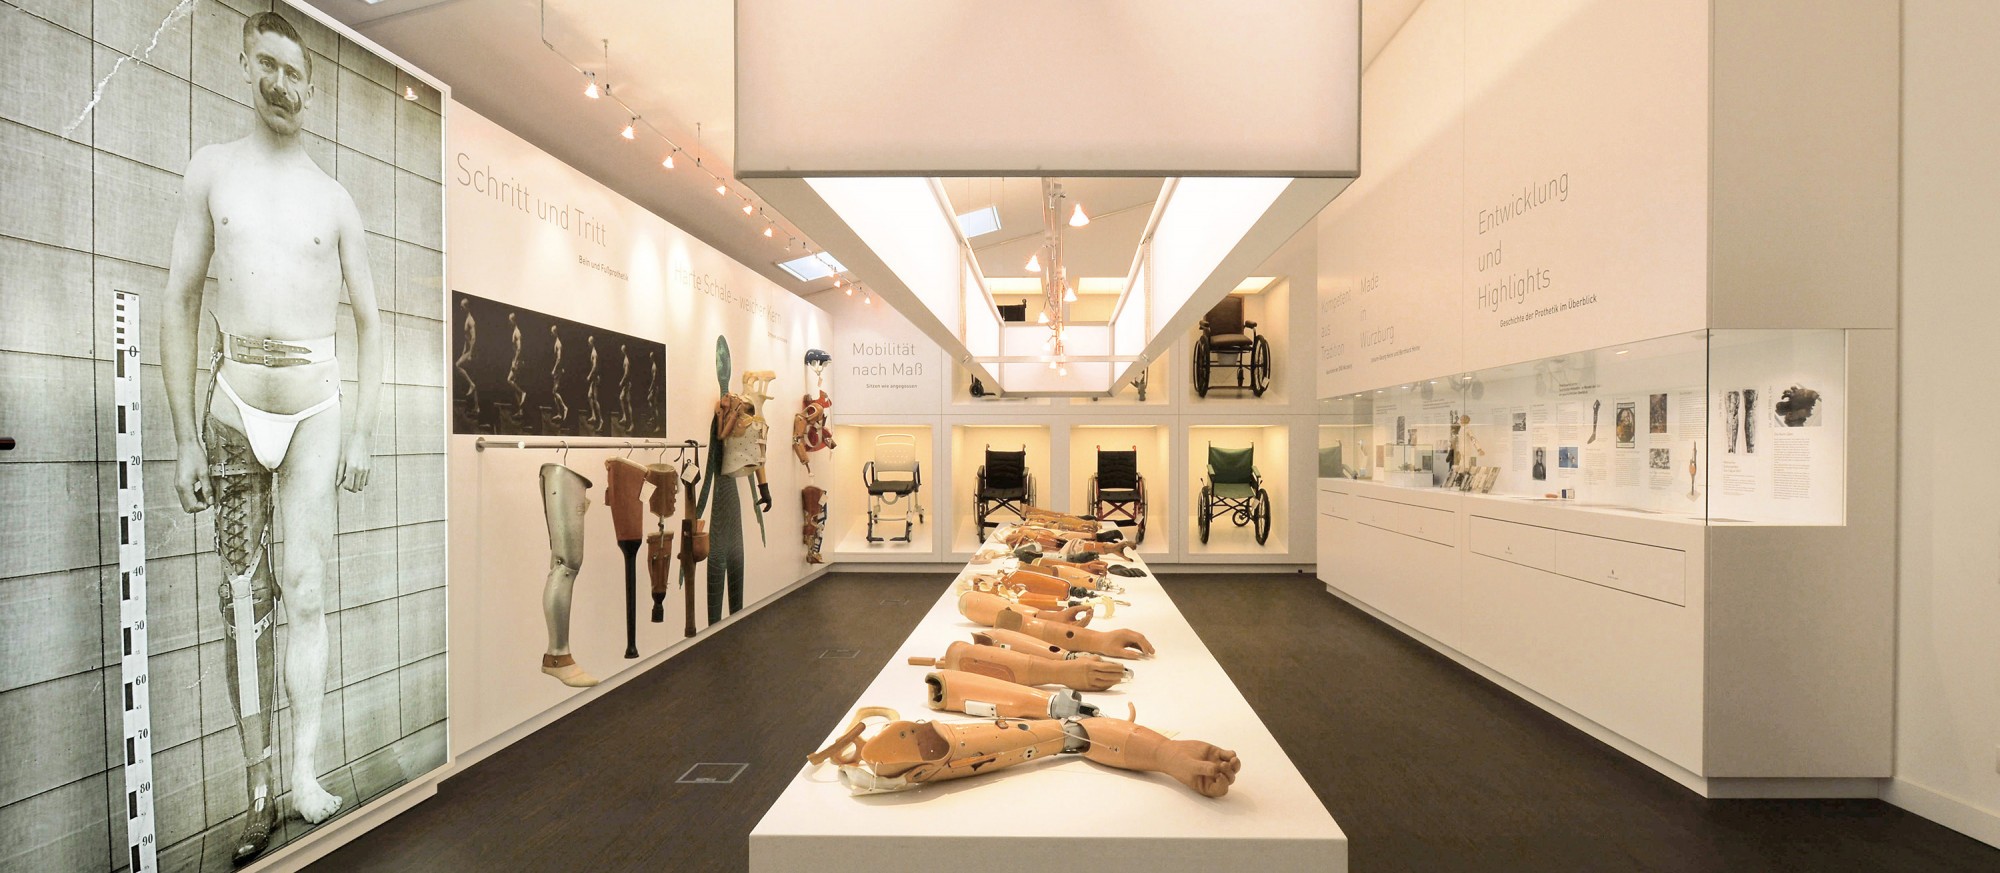 Blick in den zentralen Ausstellungsraum der Sammlung mit ausgestellten Prothesen und Rollstühlen zum Anfassen